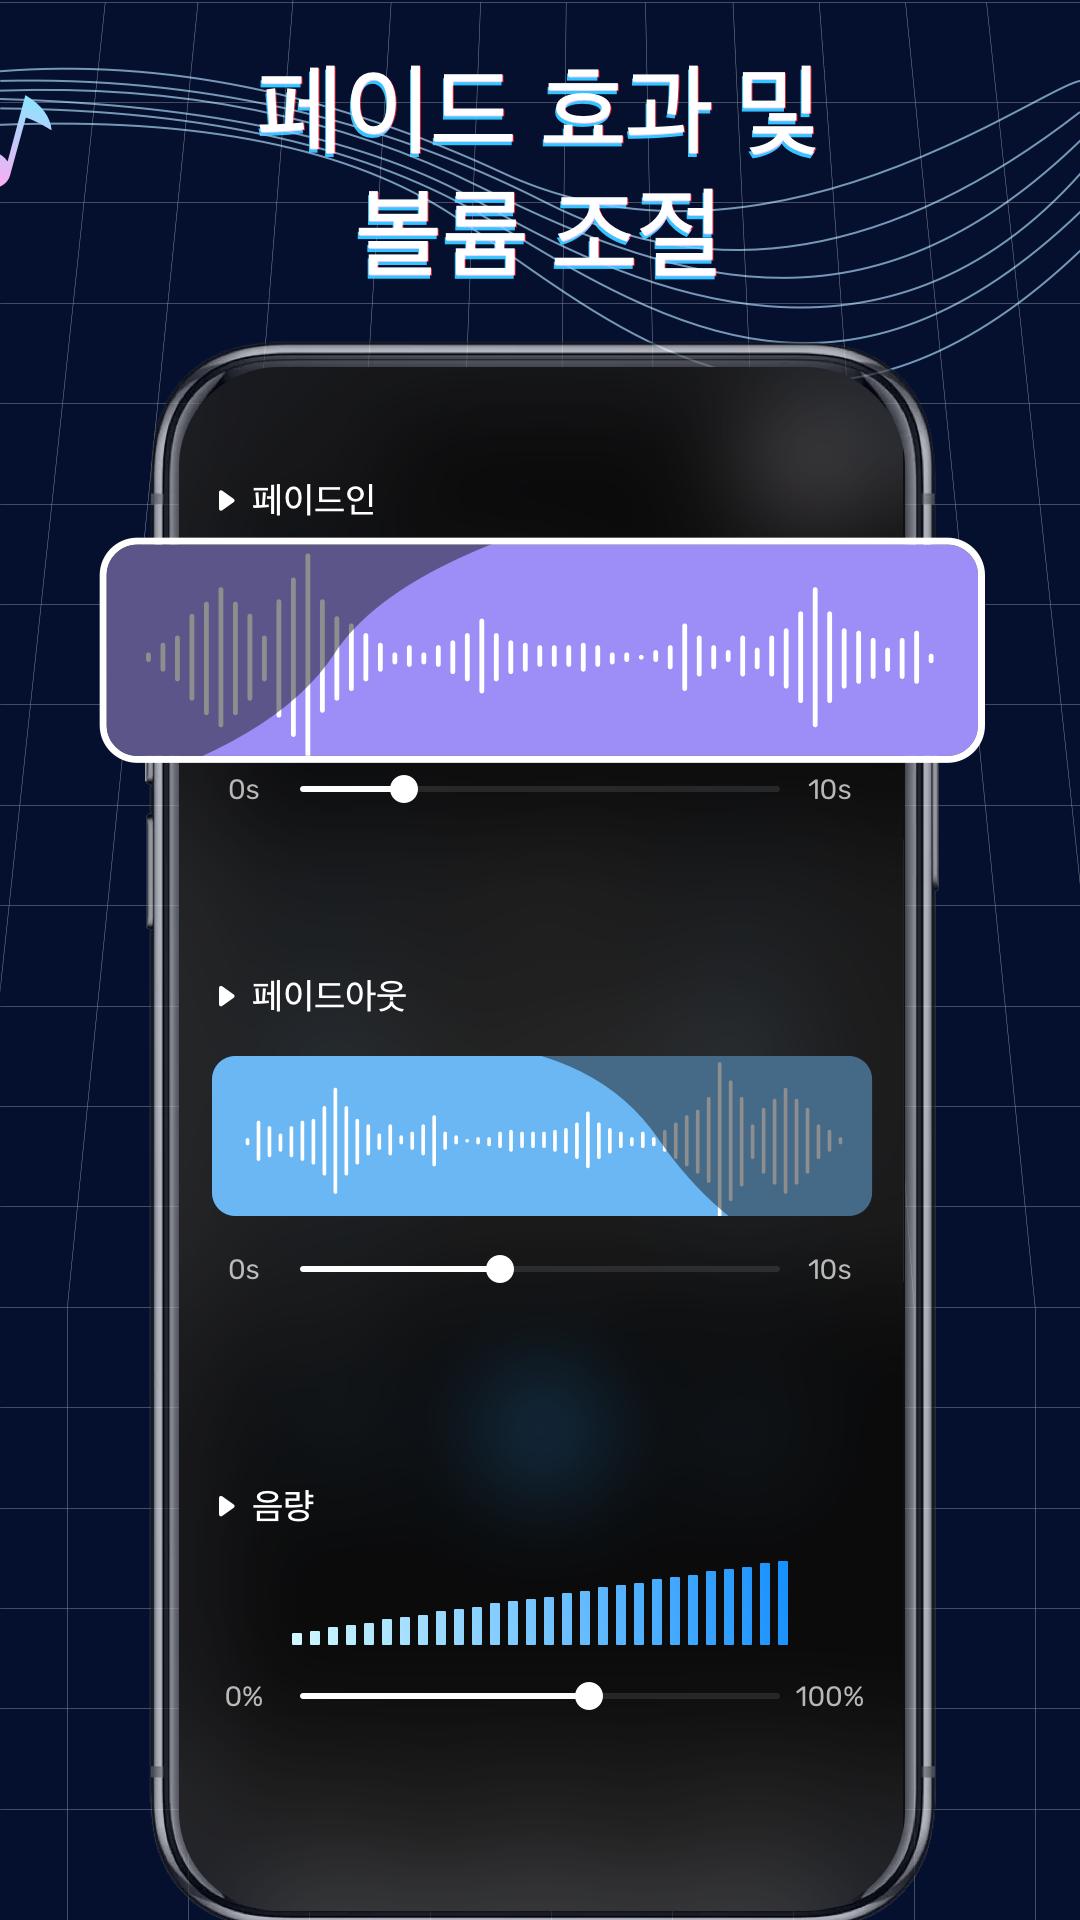 Android용 벨소리 메이커: 뮤직 커터, 커스텀 벨소리 Apk 다운로드